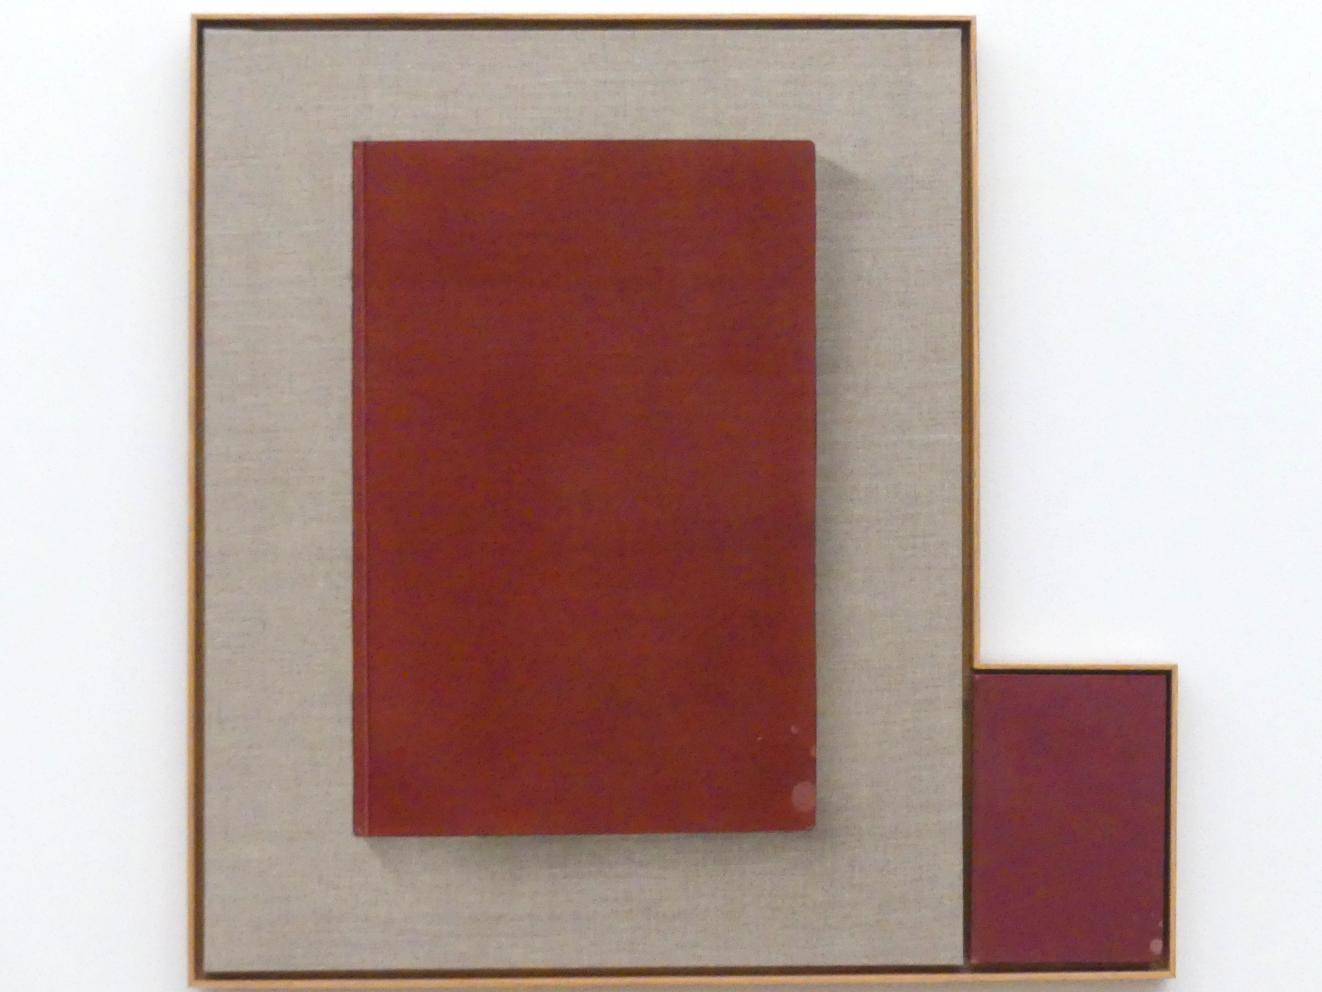 Edward Ruscha (1962–2013), Buch mit Flecken, München, Museum Brandhorst, Saal 0.7, 2013